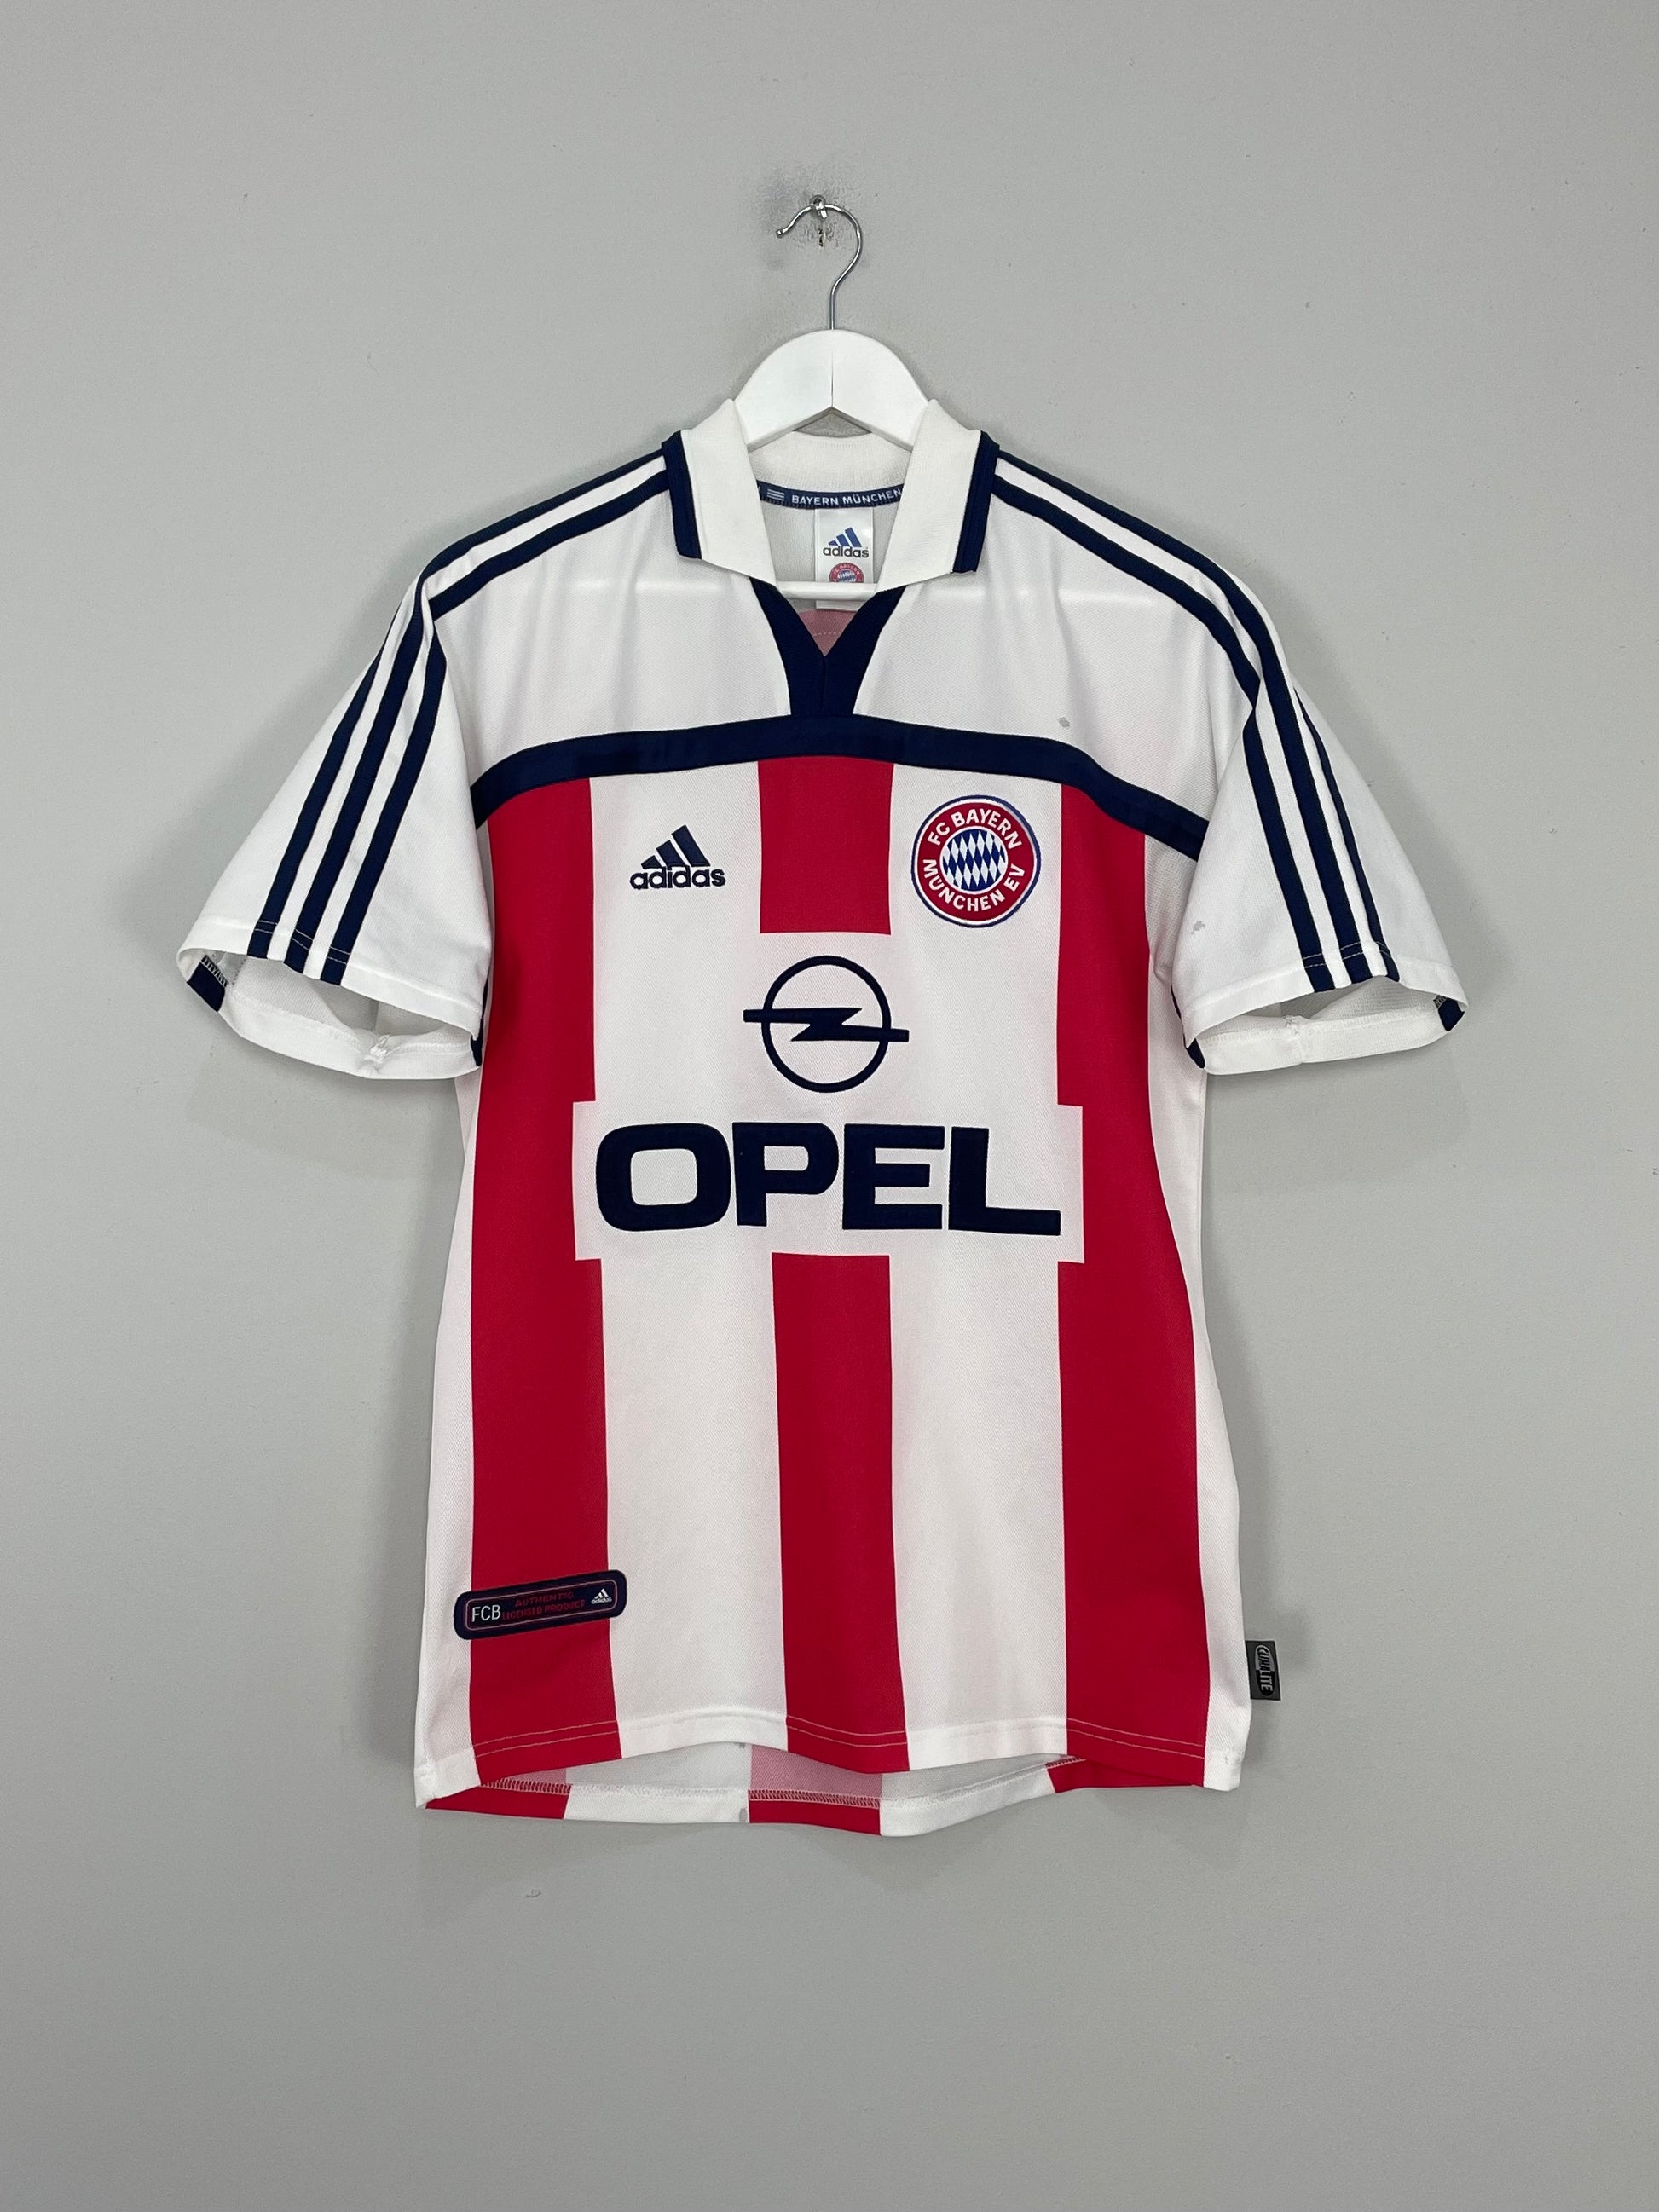 Image of the Bayern Munich shirt from the 2000/02 season